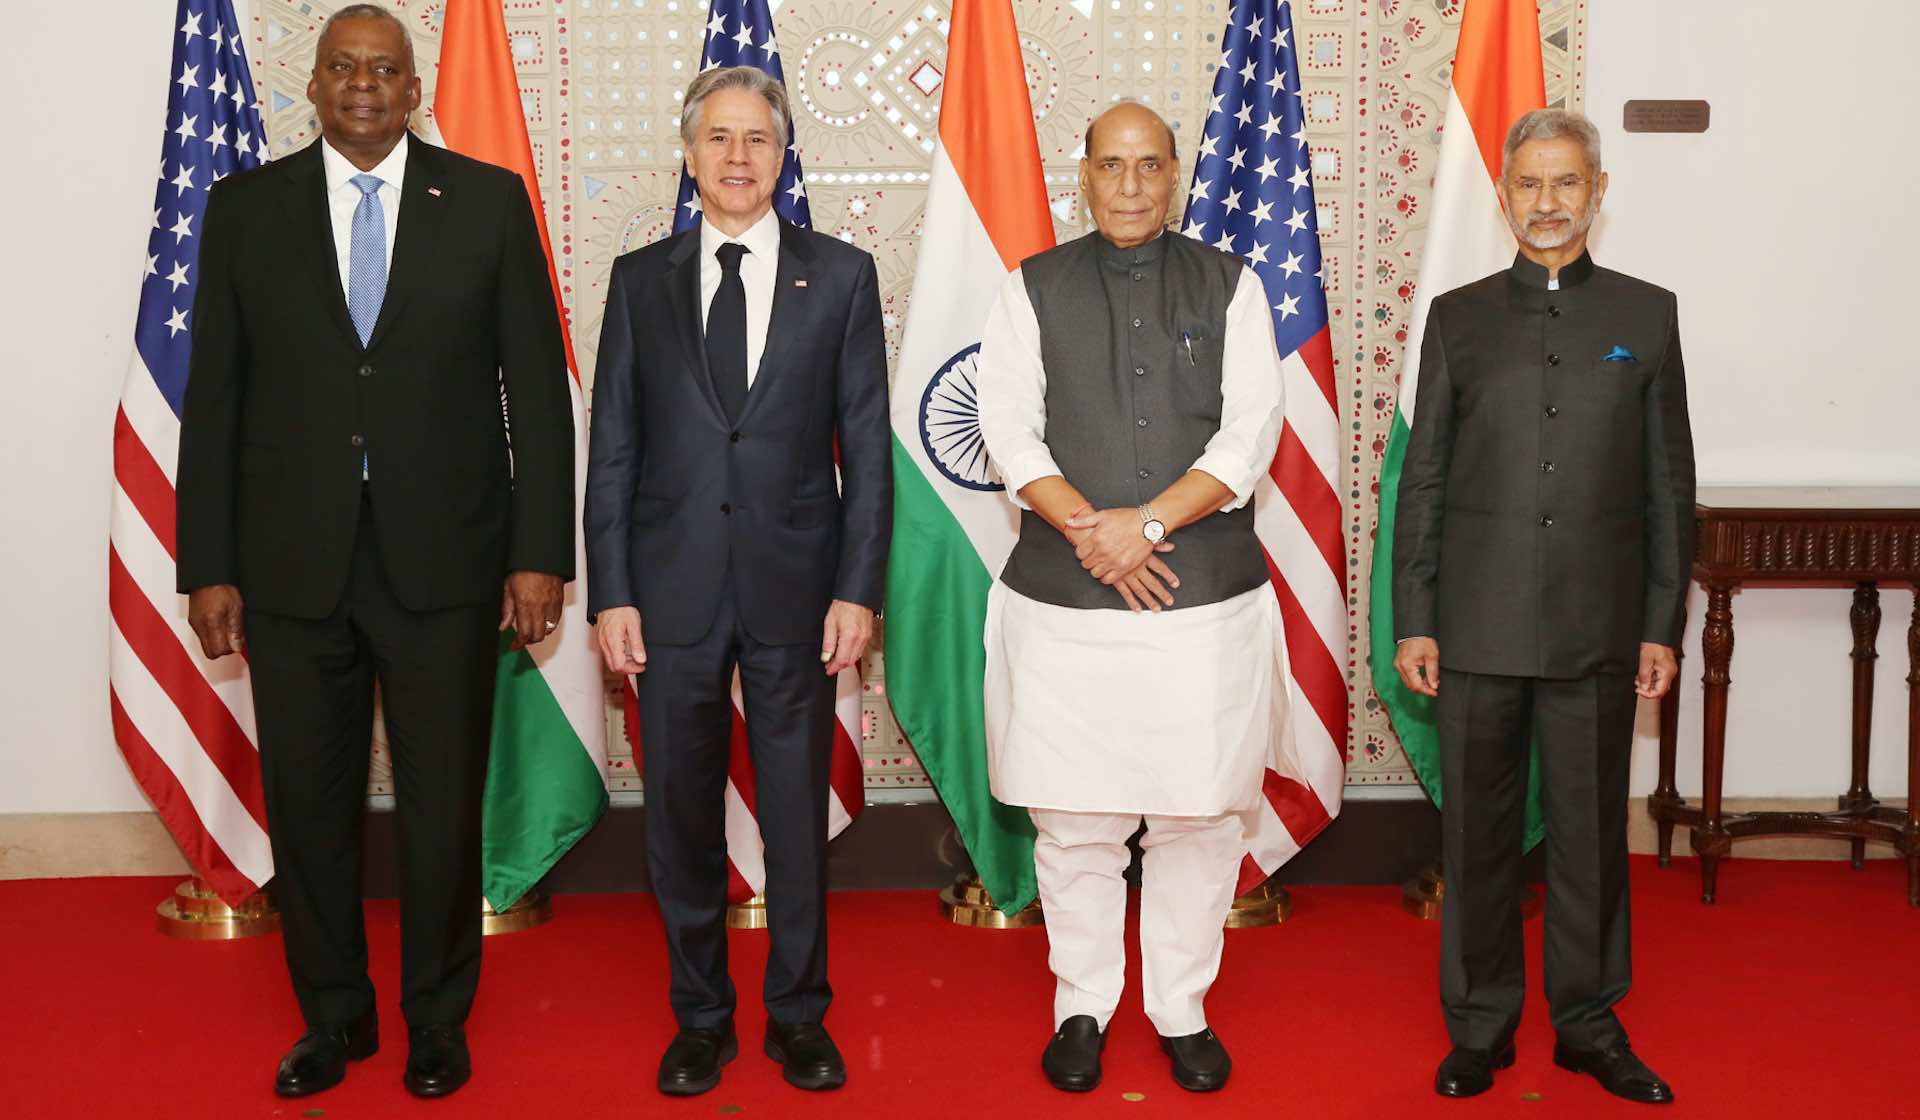 Le partenariat stratégique entre l'Inde et les États-Unis renforcé lors du dialogue ministériel 2 plus 2